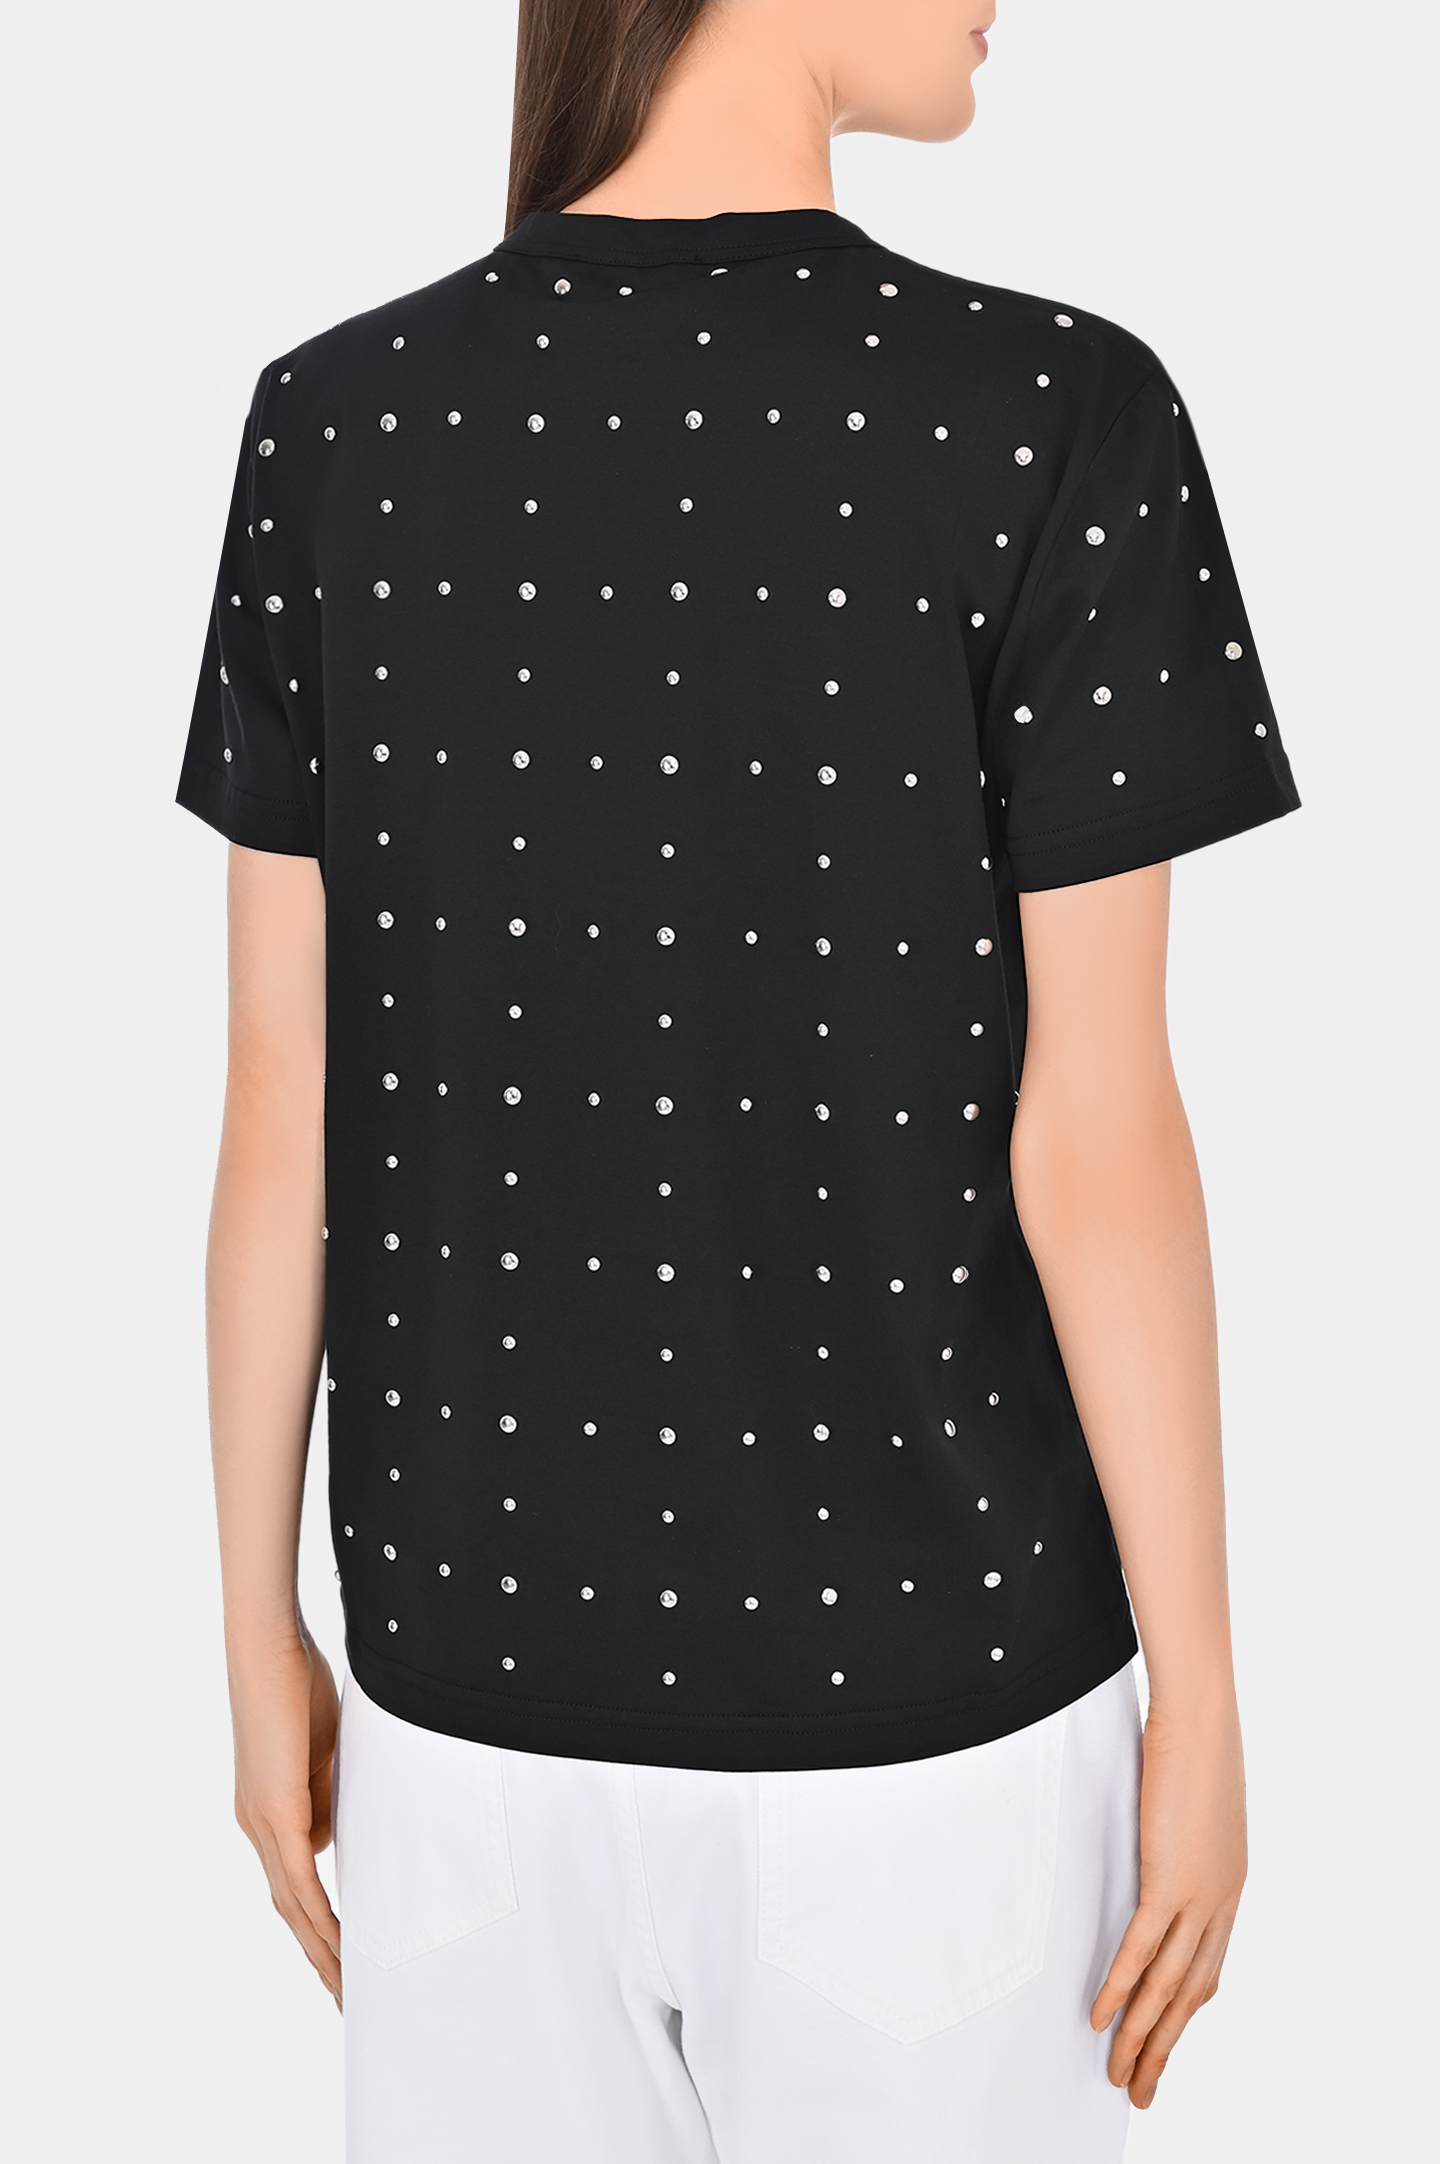 Хлоковая футболка со стразами FABIANA FILIPPI JED274F445H484, цвет: Черный, Женский